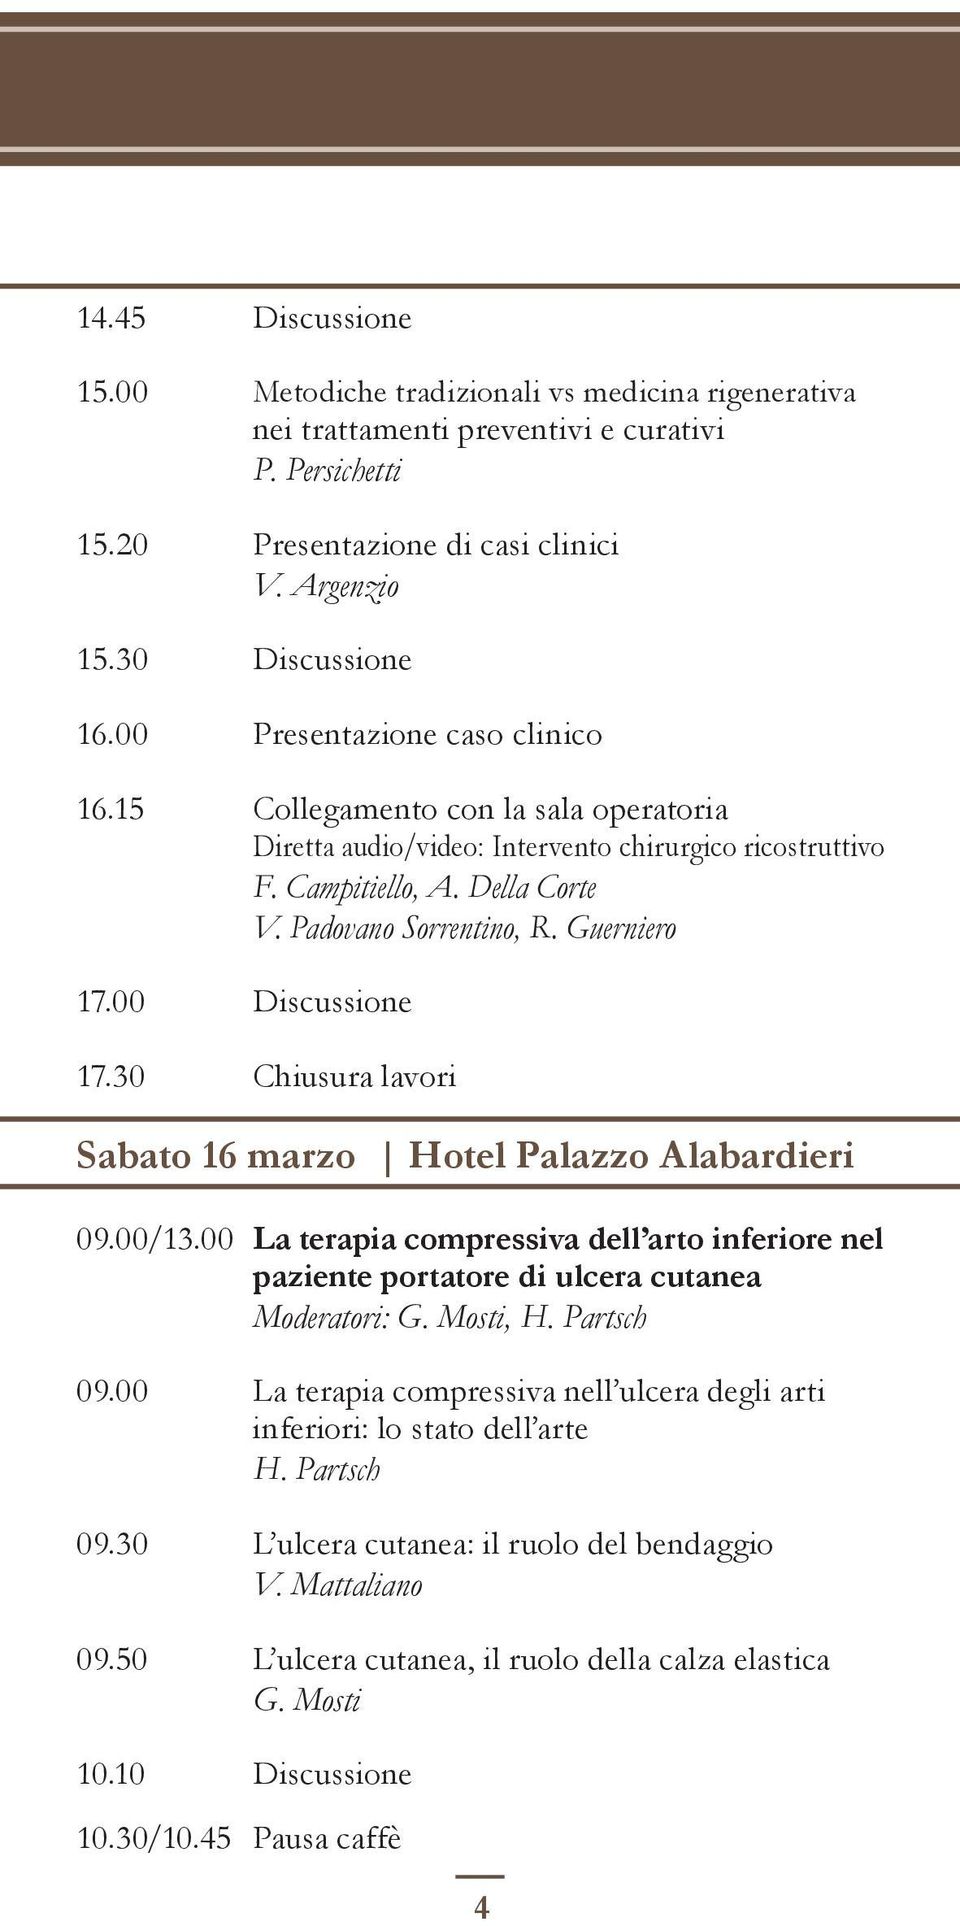 00 Discussione 17.30 Chiusura lavori Sabato 16 marzo Hotel Palazzo Alabardieri 09.00/13.00 La terapia compressiva dell arto inferiore nel paziente portatore di ulcera cutanea Moderatori: G. Mosti, H.